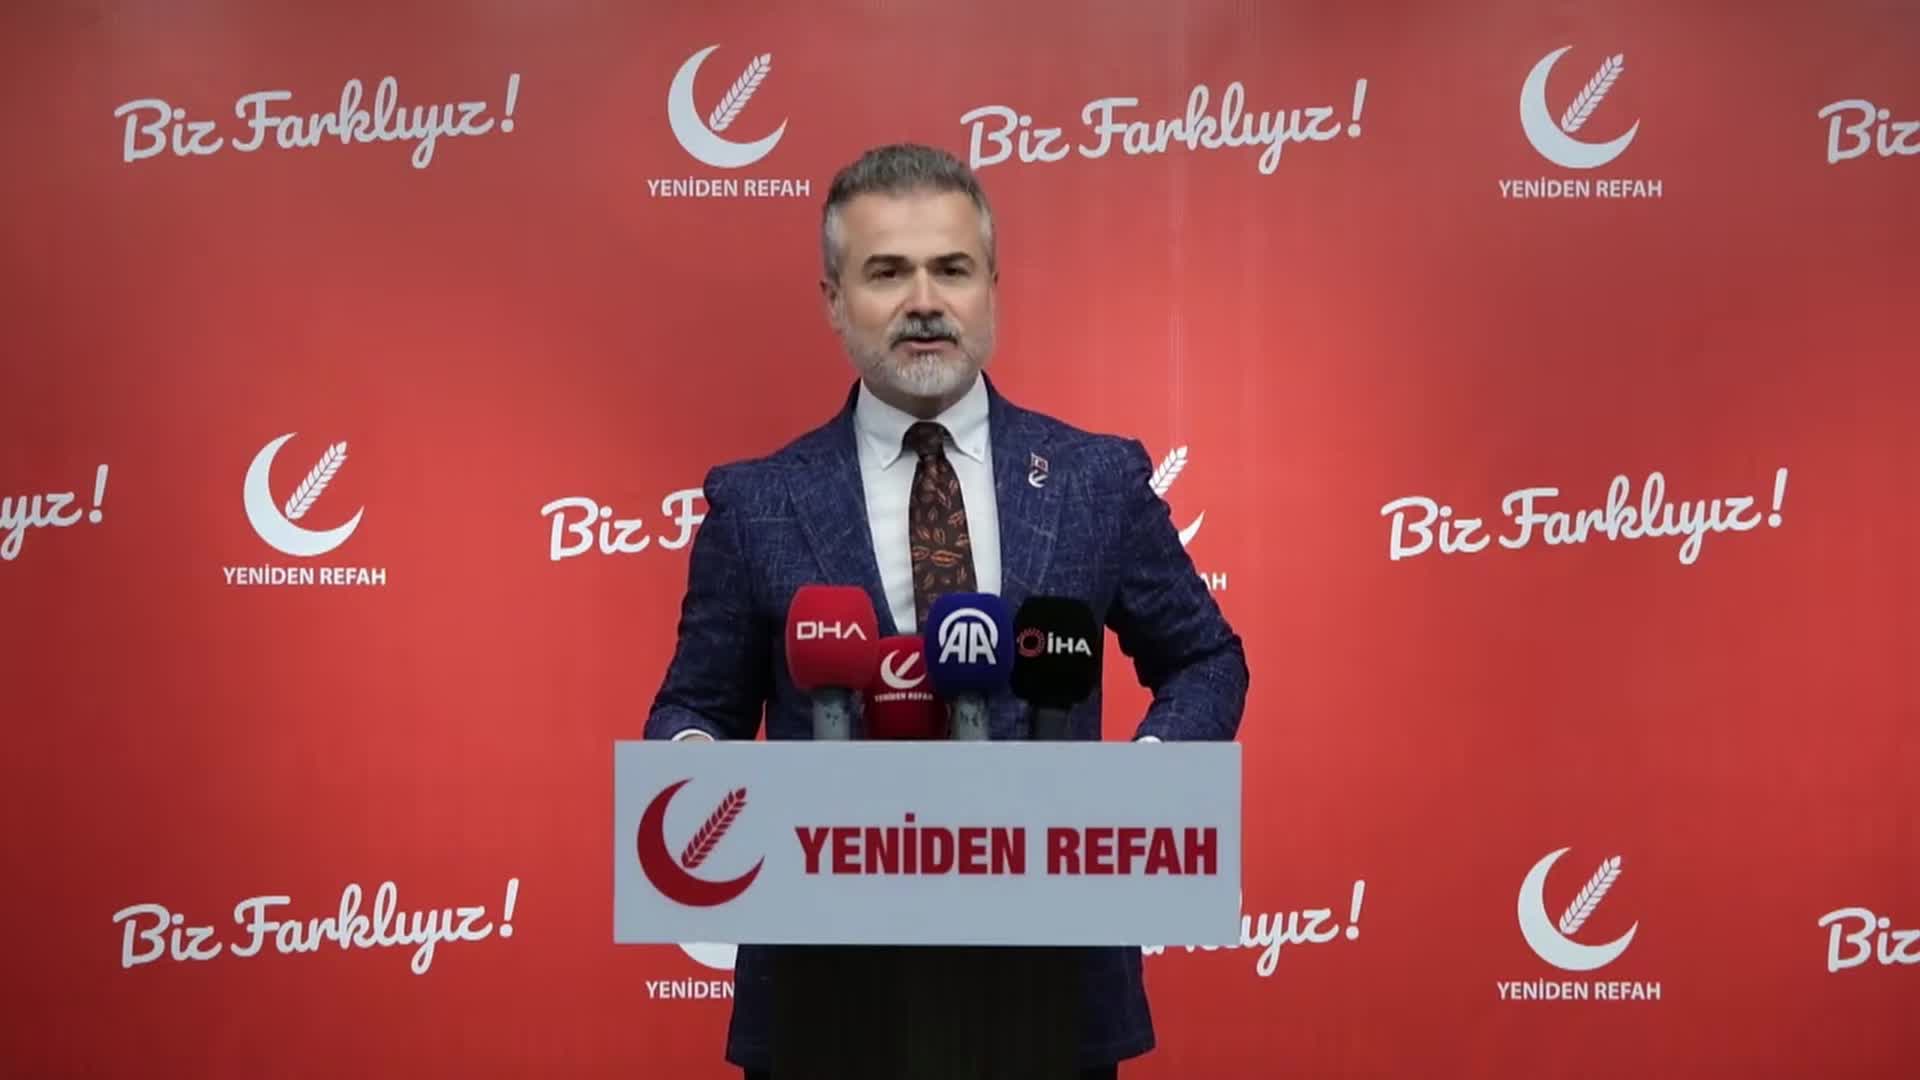 YRP Genel Başkan Yardımcısı Kılıç: "Hükümetin çaydan başlayarak hububatla devam eden baş fiyat yaklaşımı, Türkiye’nin gıda güvenliğine yönelik çok ciddi tehdittir